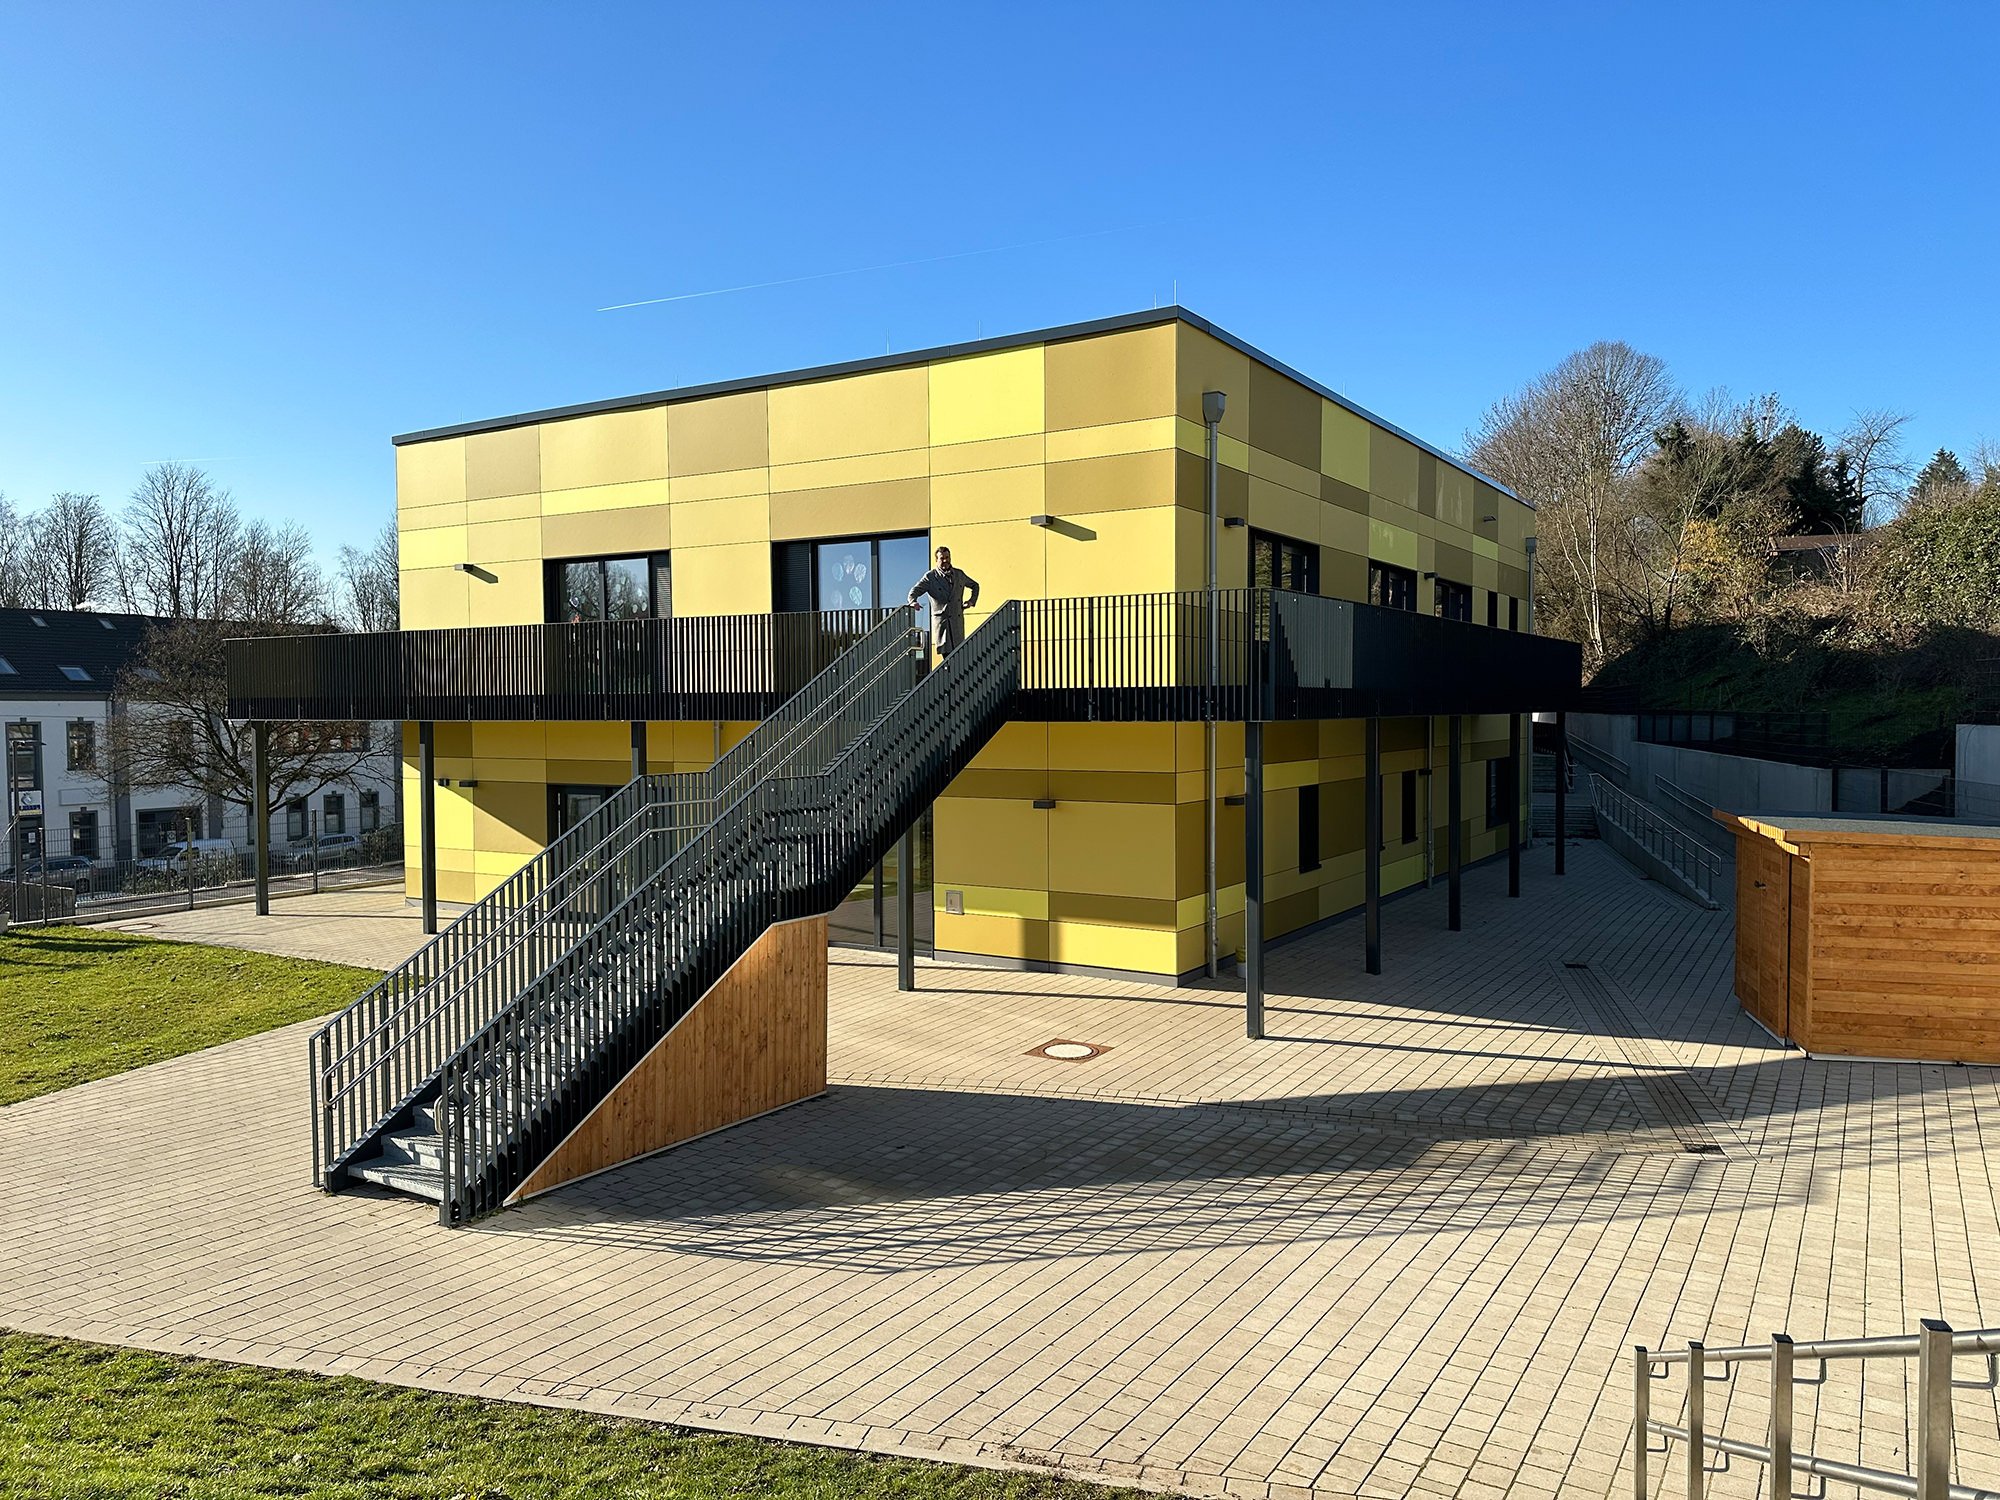 Kindertagesstätte, Neubau, Wuppertal - ah-architektur.de | Alisic-Haverkamp – Wir verfolgen das Ziel, funktionelle, kostenbewusste und ambitioniert gestaltete Architektur zu schaffen, die einen ah-Effekt auslöst.